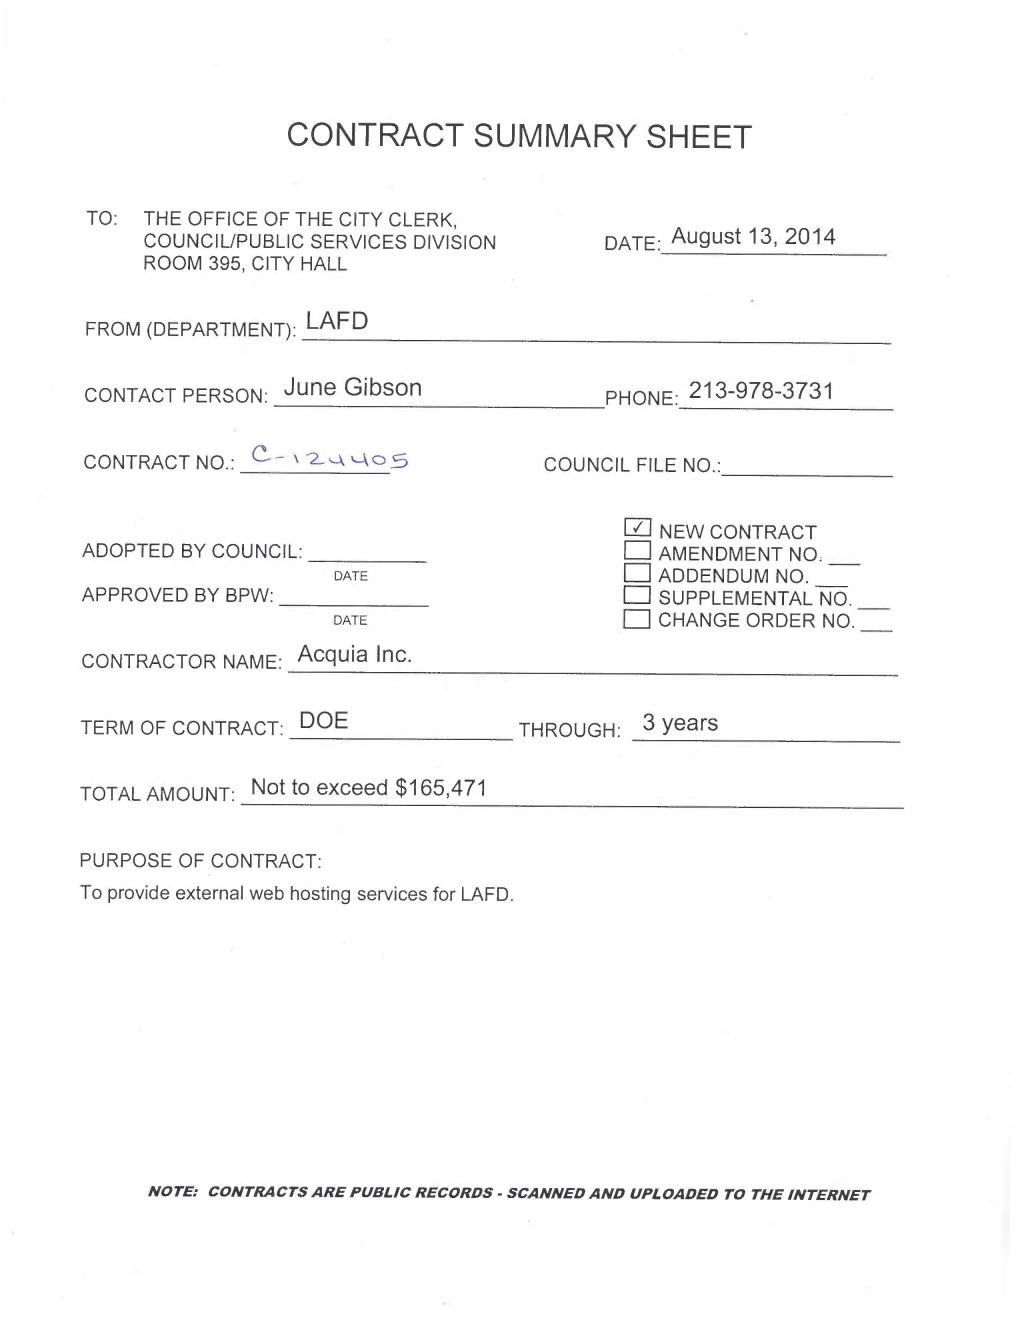 Contract Summary Sheet